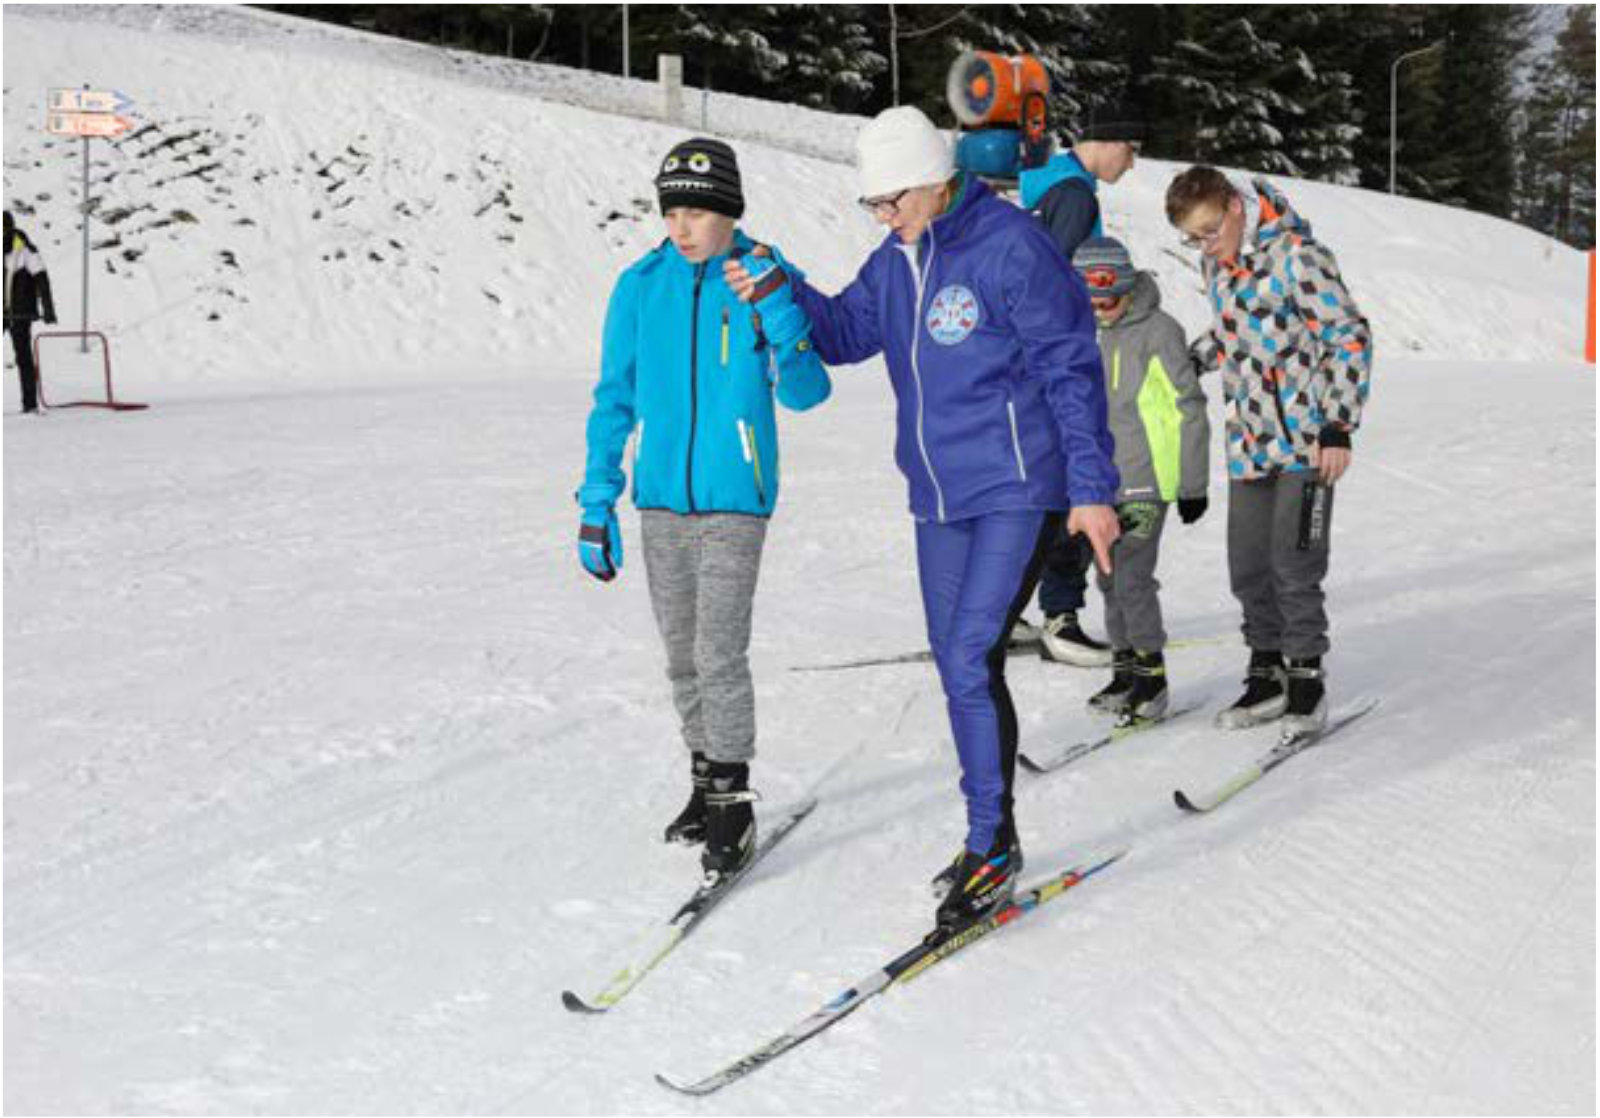 Grupa osób na nartach biegowych